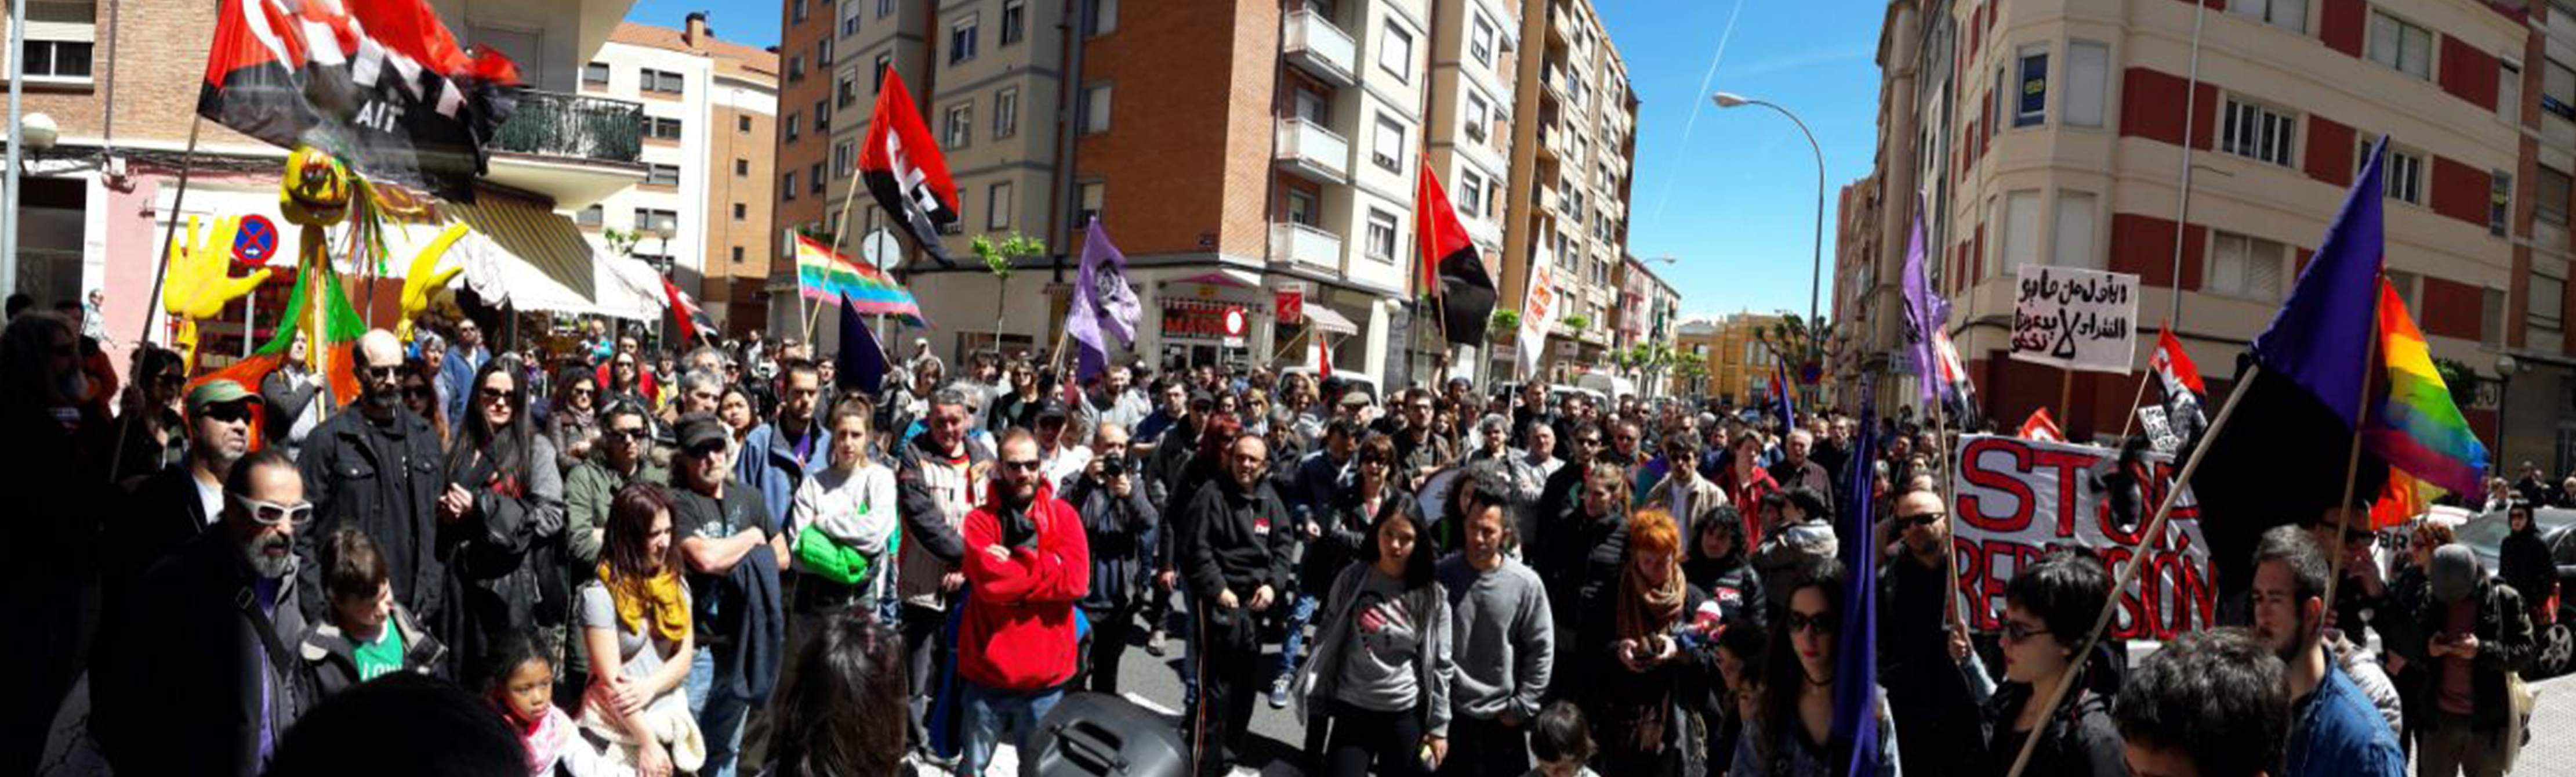 Crónica del 1º de Mayo en Logroño